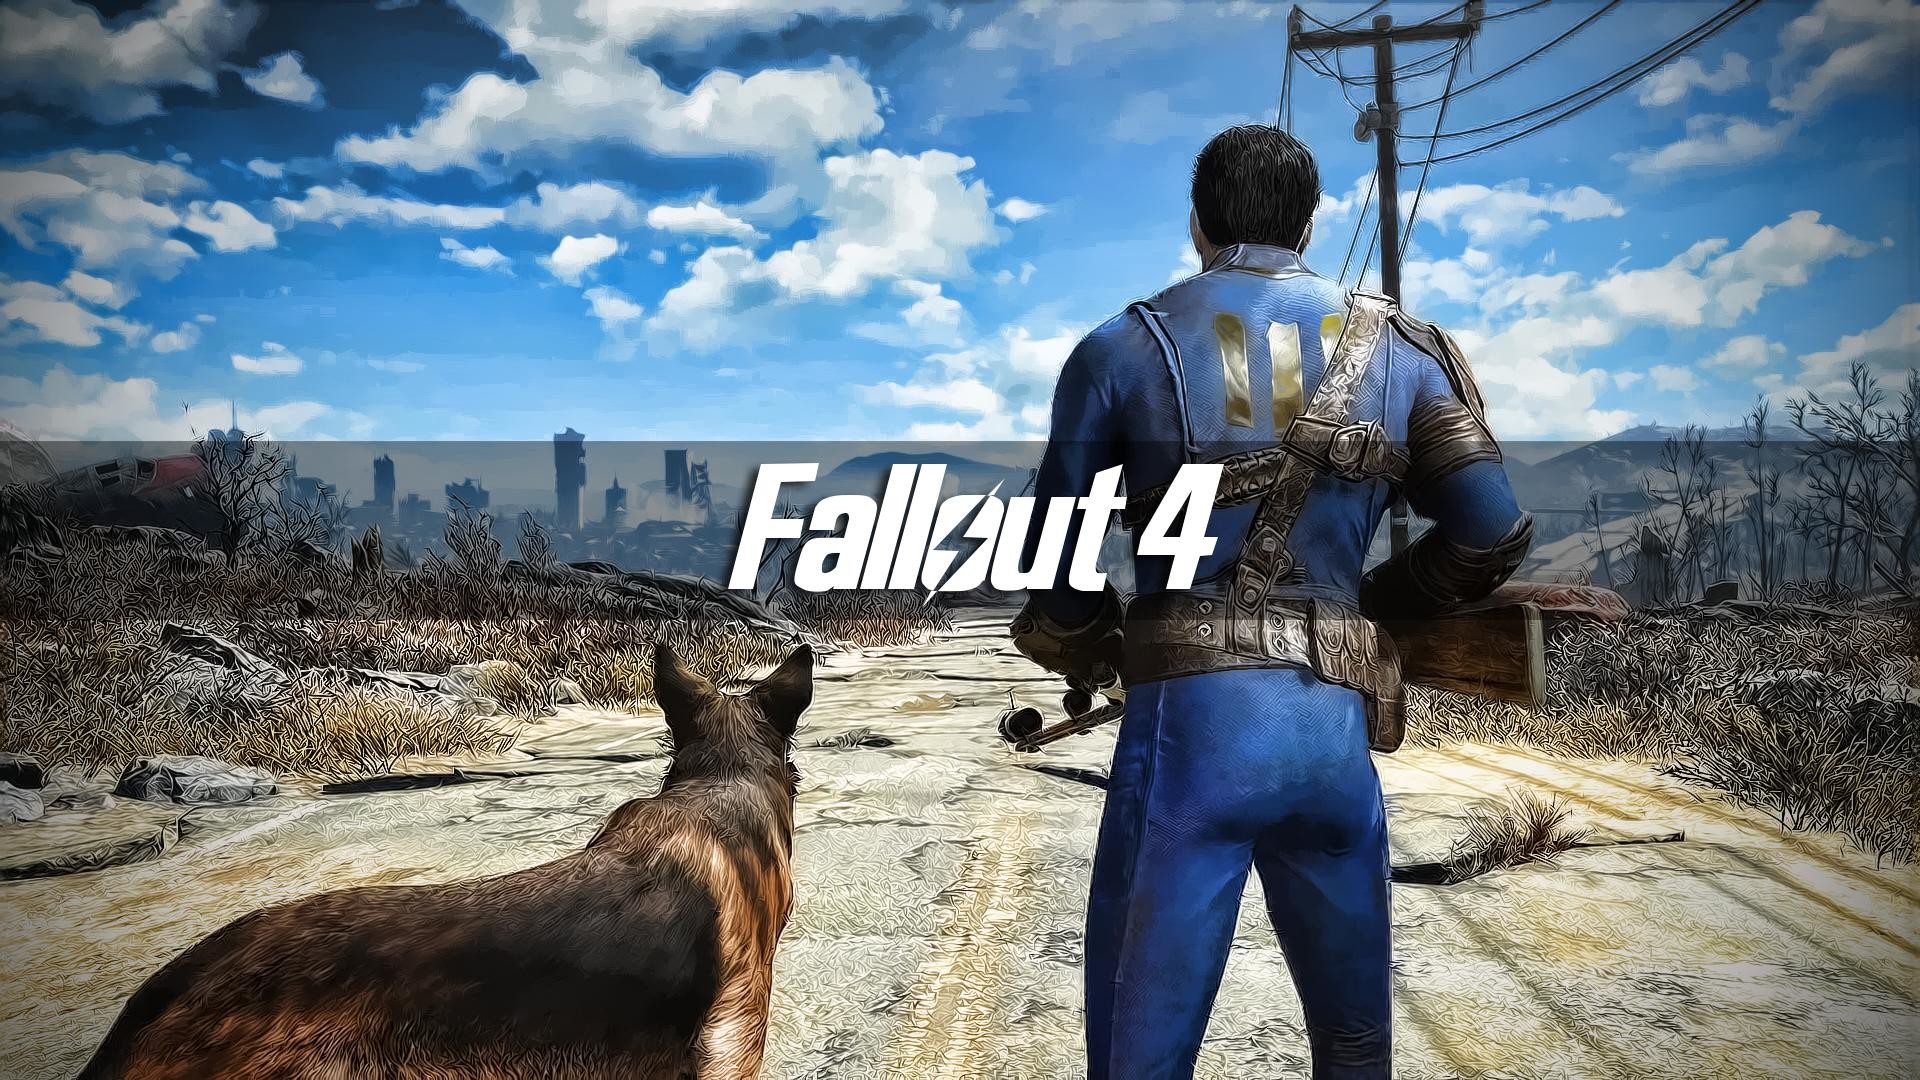 Fallout 4 hd